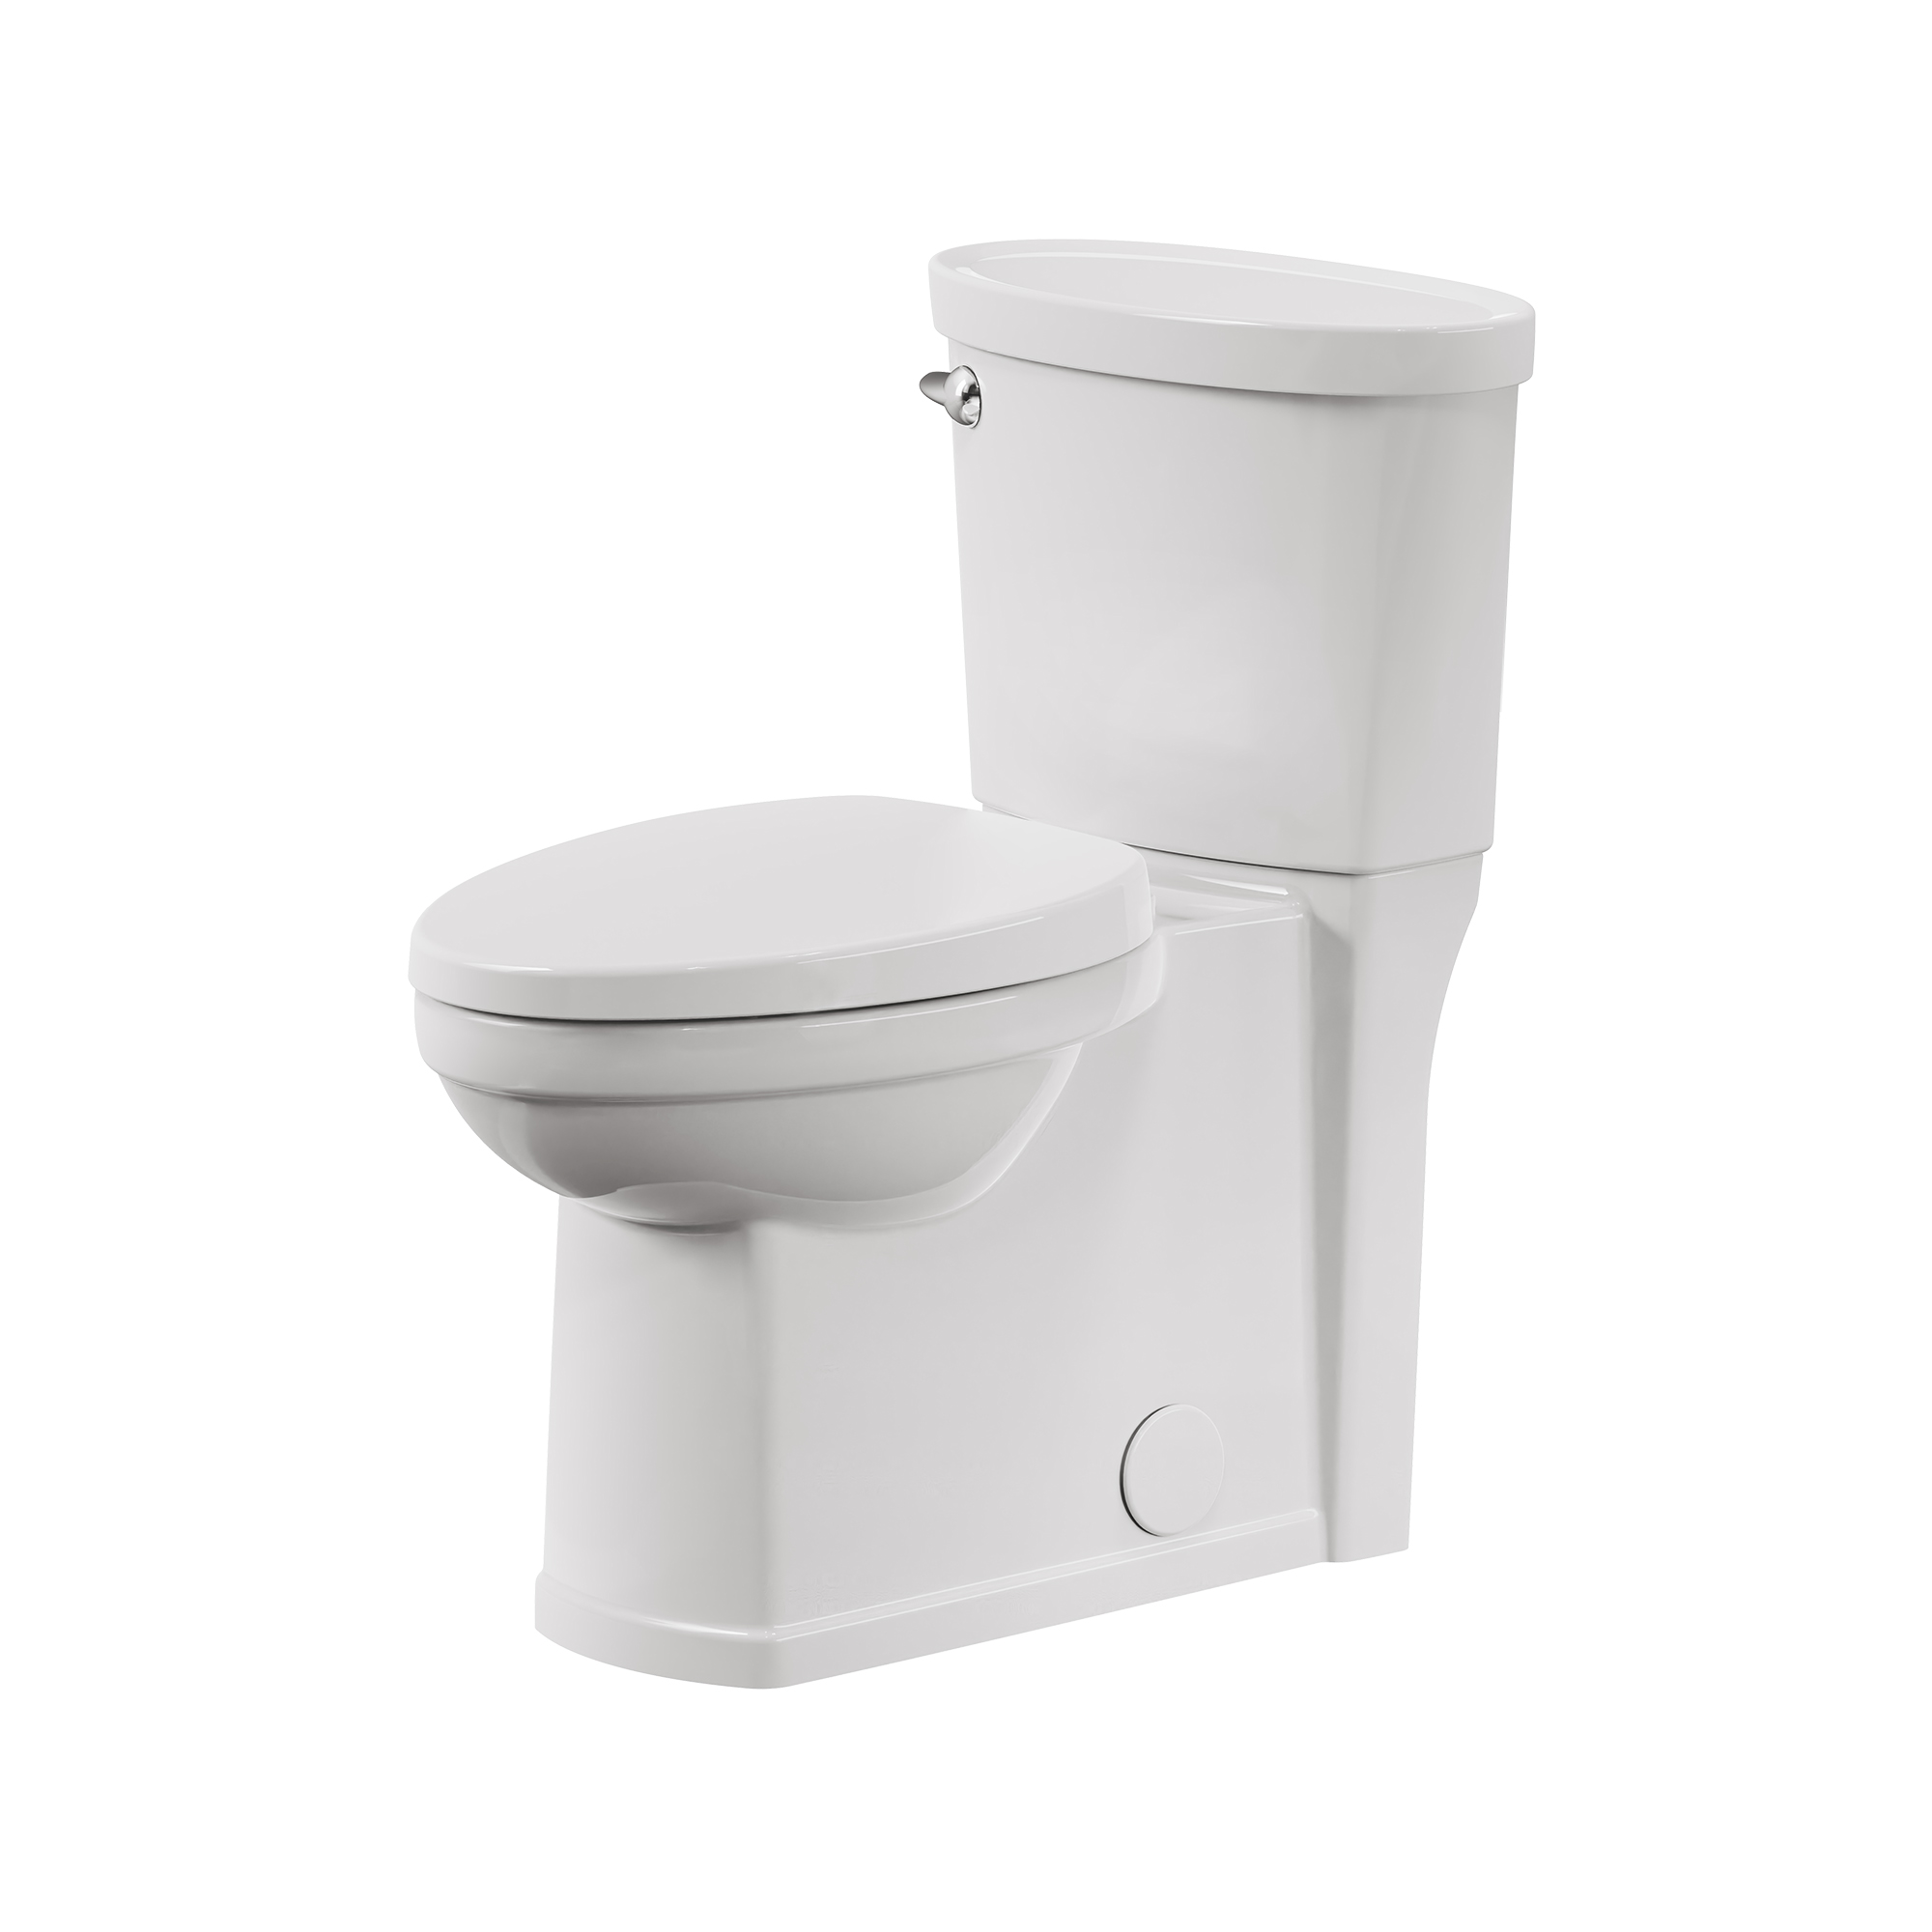 Toilette complète Décor, 2 pièces, 1,28 gpc/4,8 lpc, à cuvette allongée à hauteur de chaise, avec siège